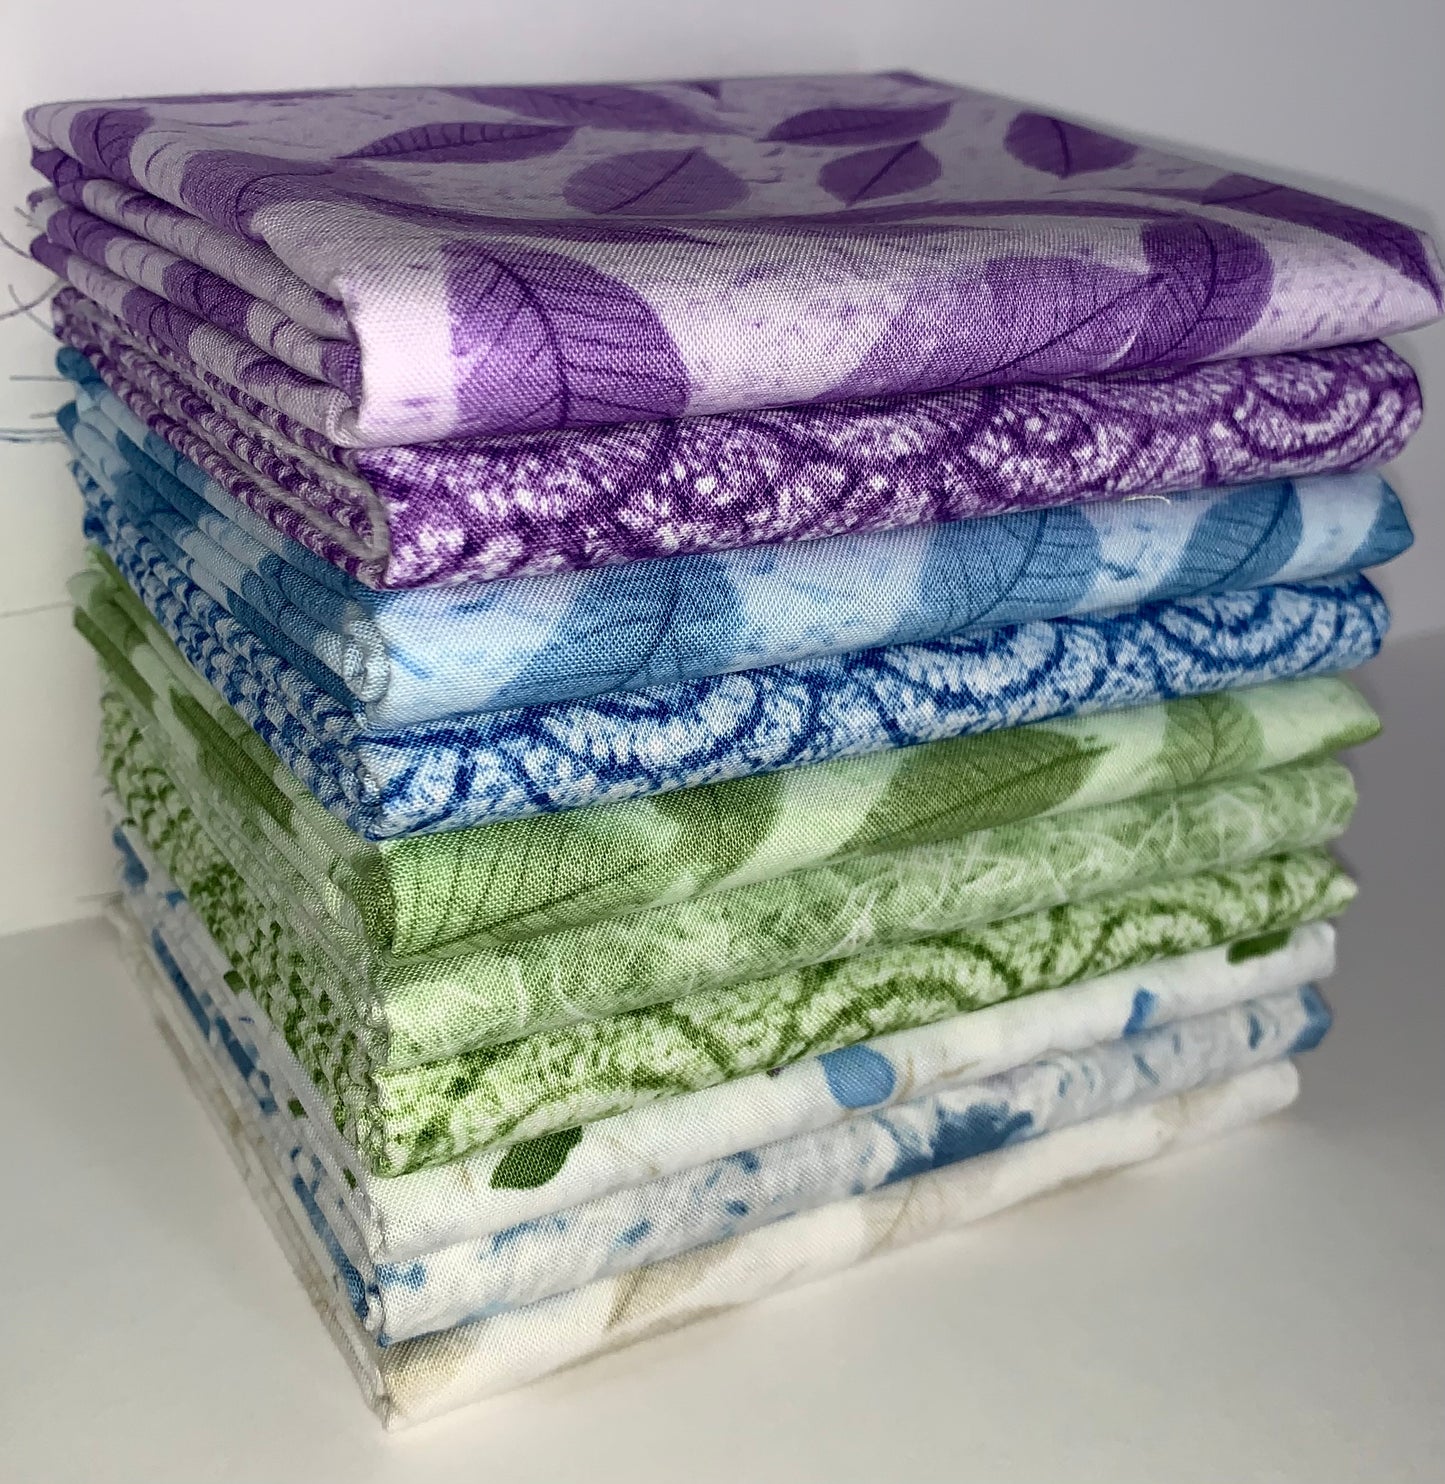 Robert Kaufman "Natural Textures" (Multicolor) Half-Yard Bundle - 10 Fabrics, 5 Total Yards